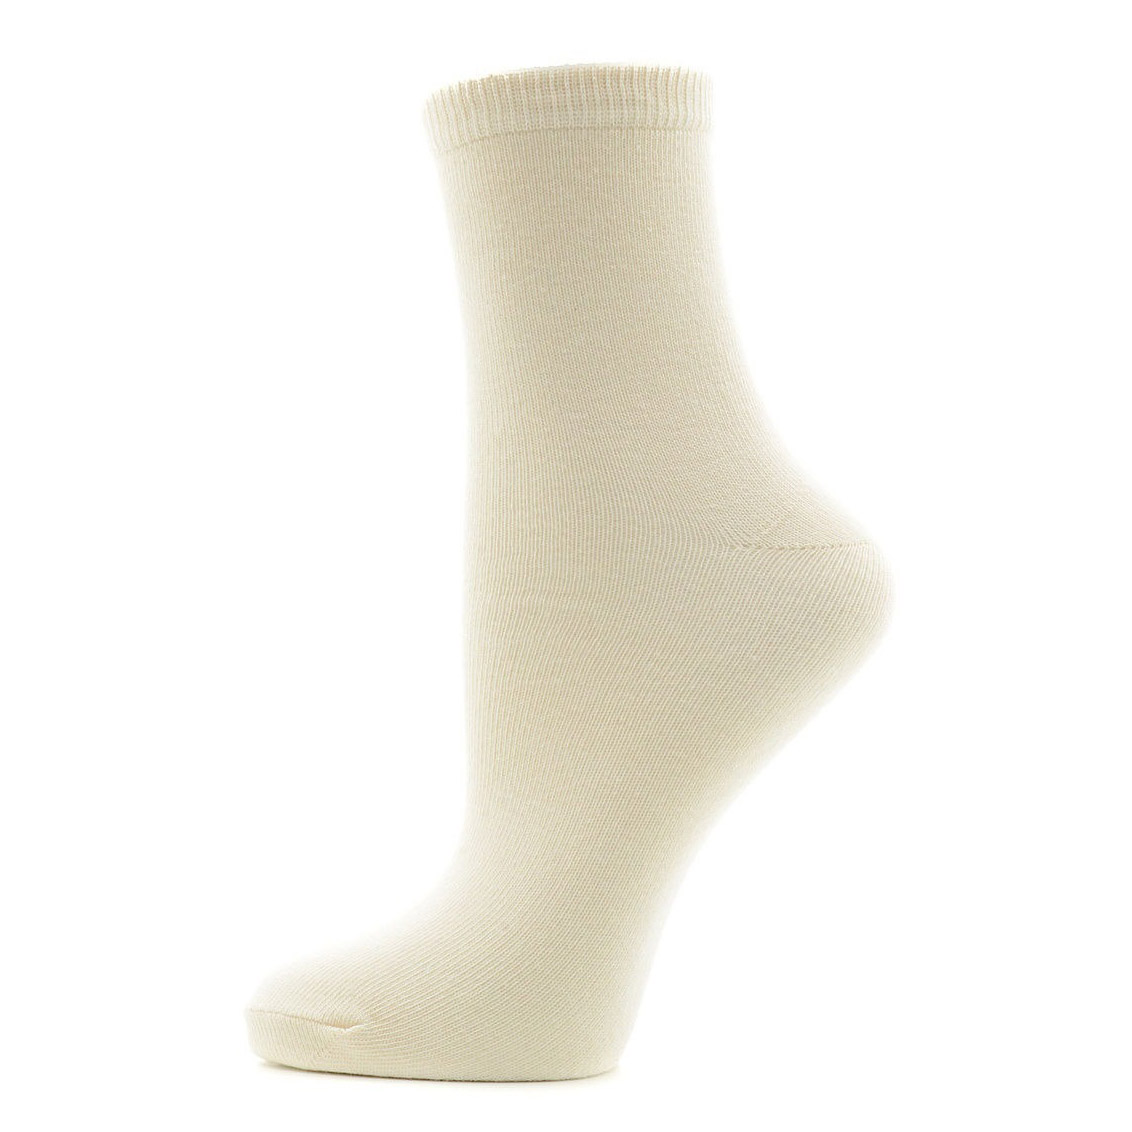 Носки Karmen Calza Lady beige S 35-37, цвет бежевый, размер 35-37 - фото 1